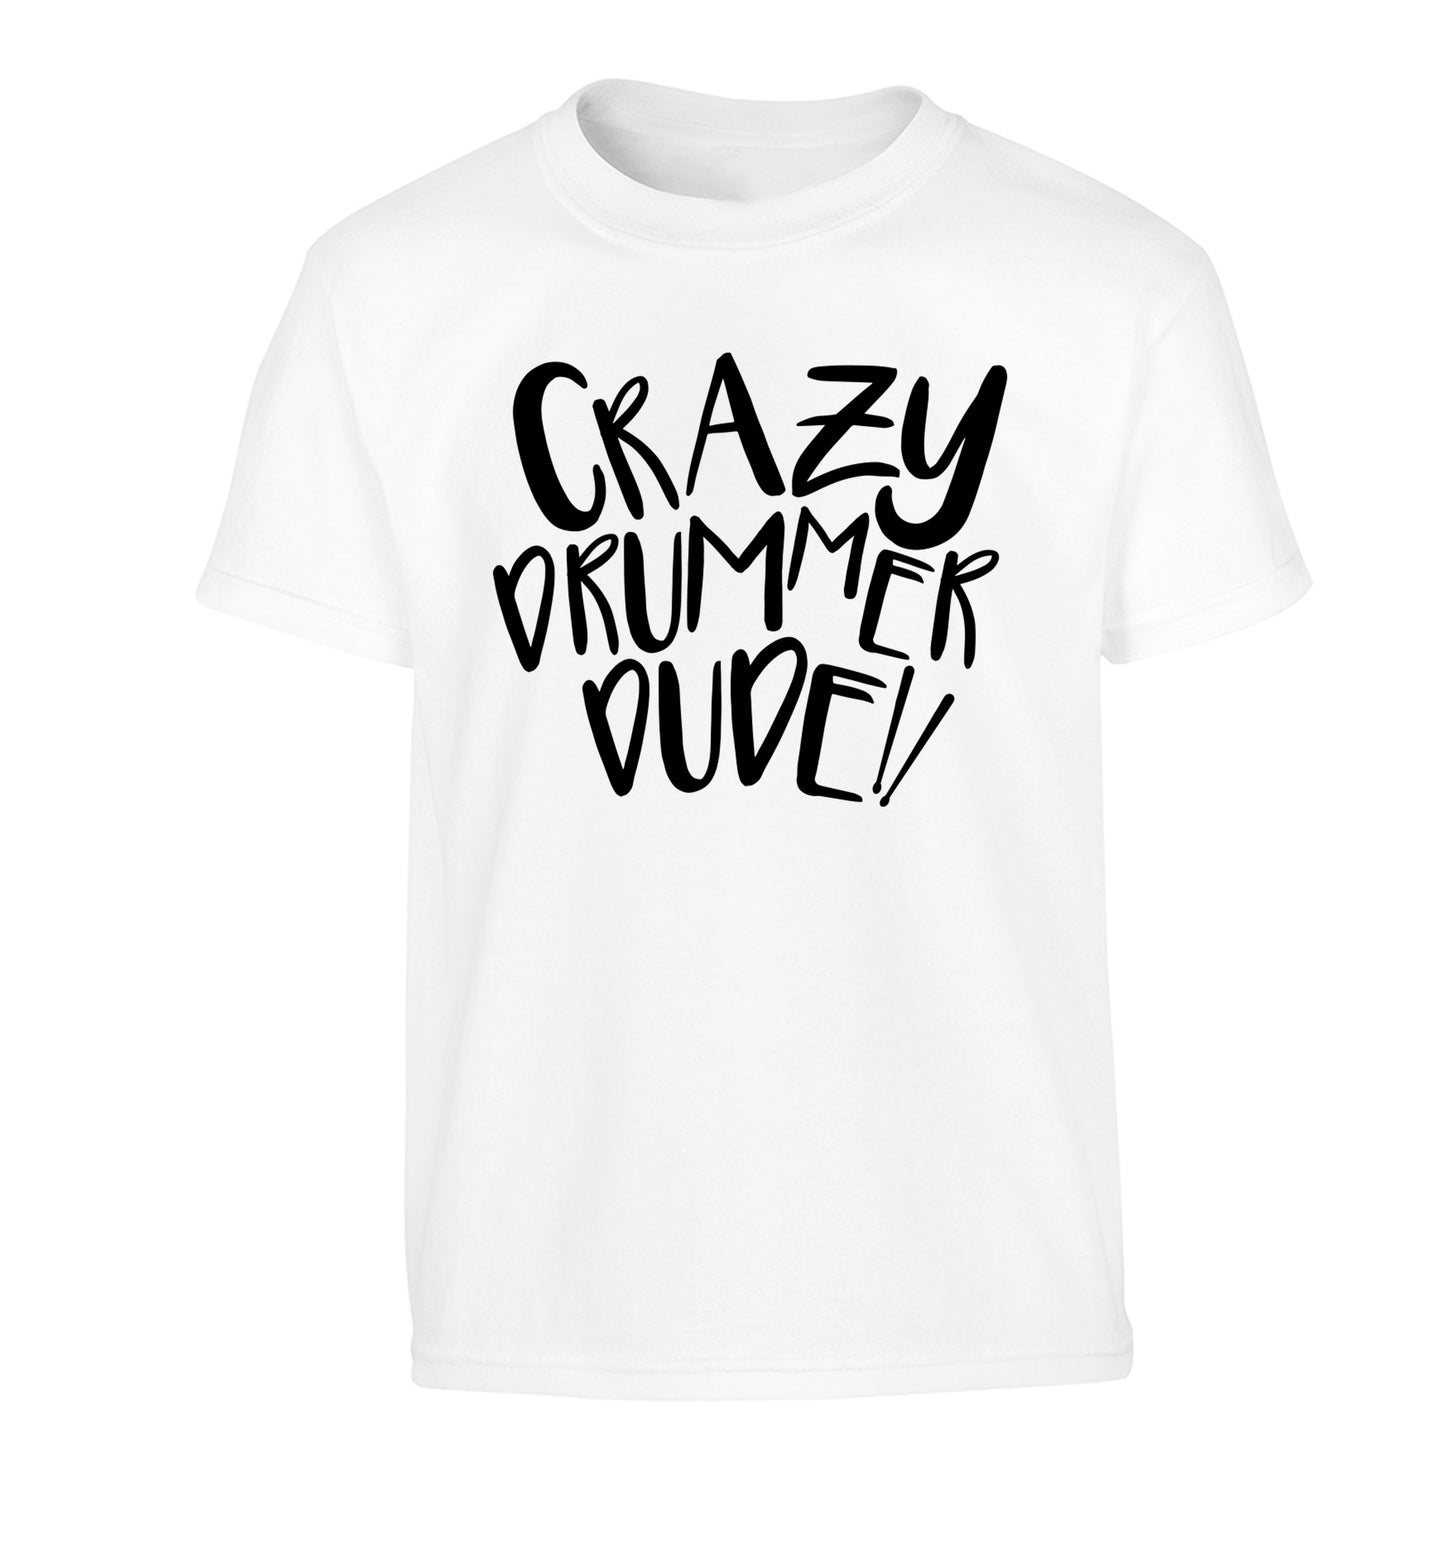 Crazy drummer dude Children's white Tshirt 12-14 Years